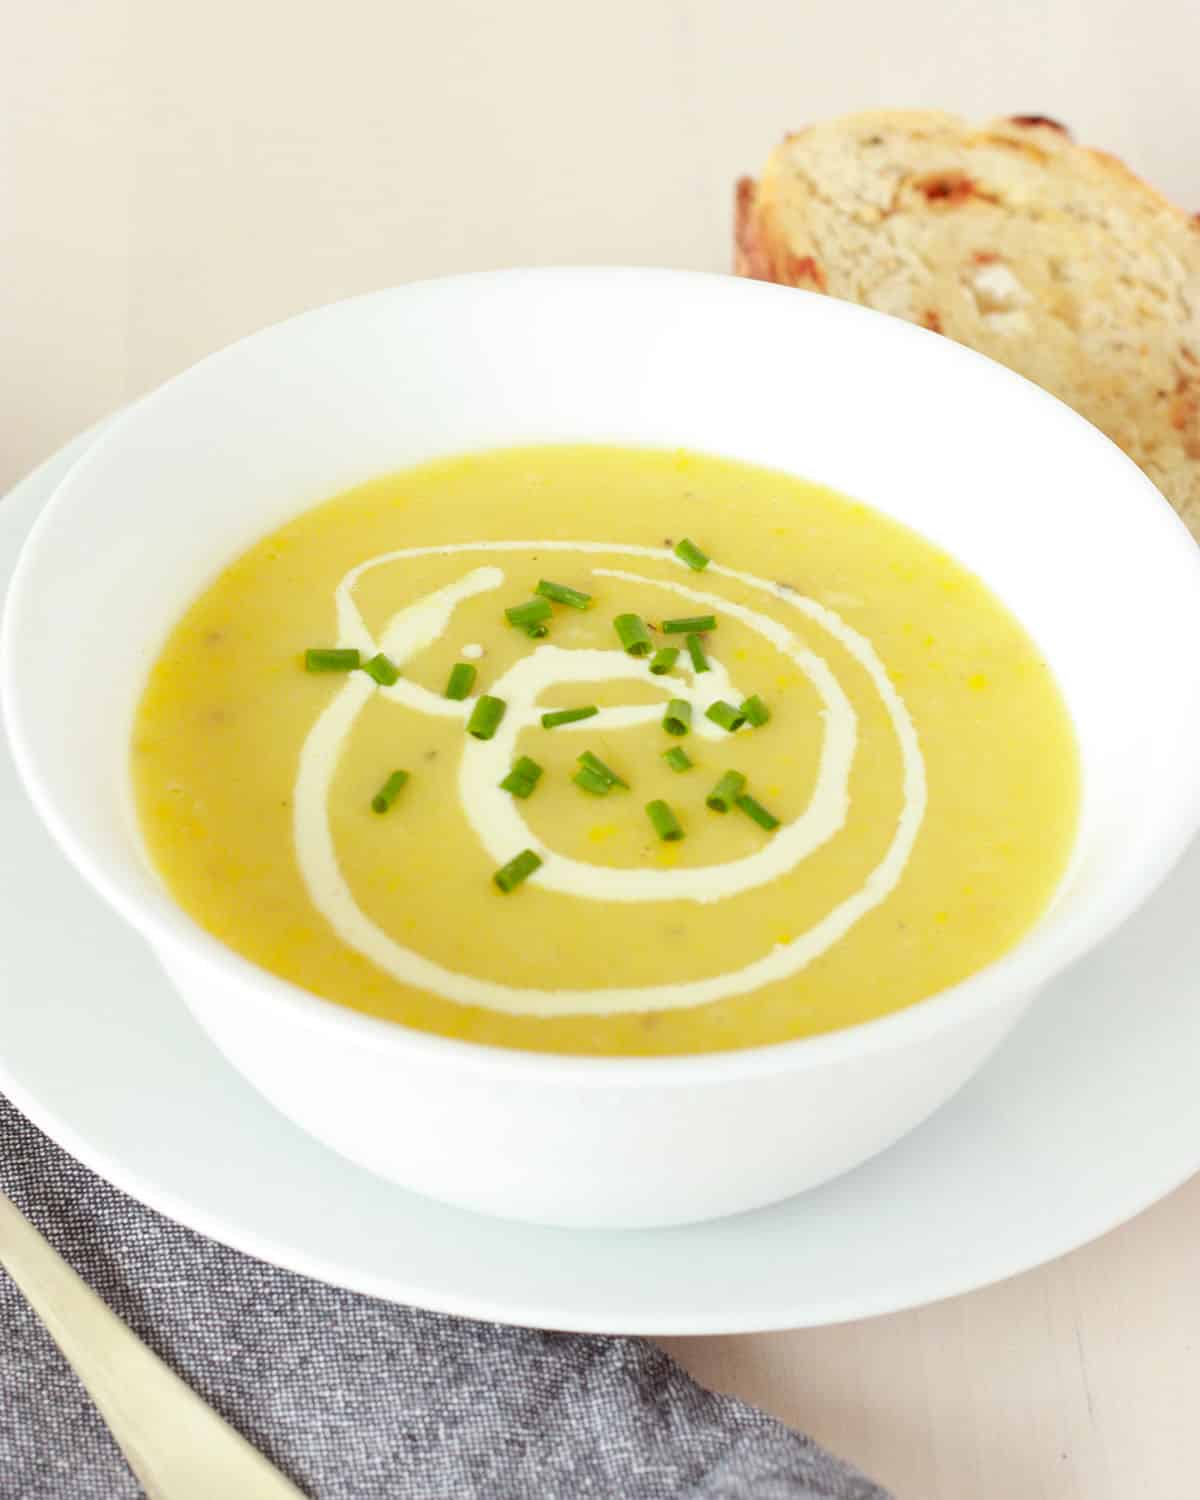 Sopa cremosa de calabaza amarilla servida con cuchara de metal y pan de masa madre con puerros verdes como guarnición